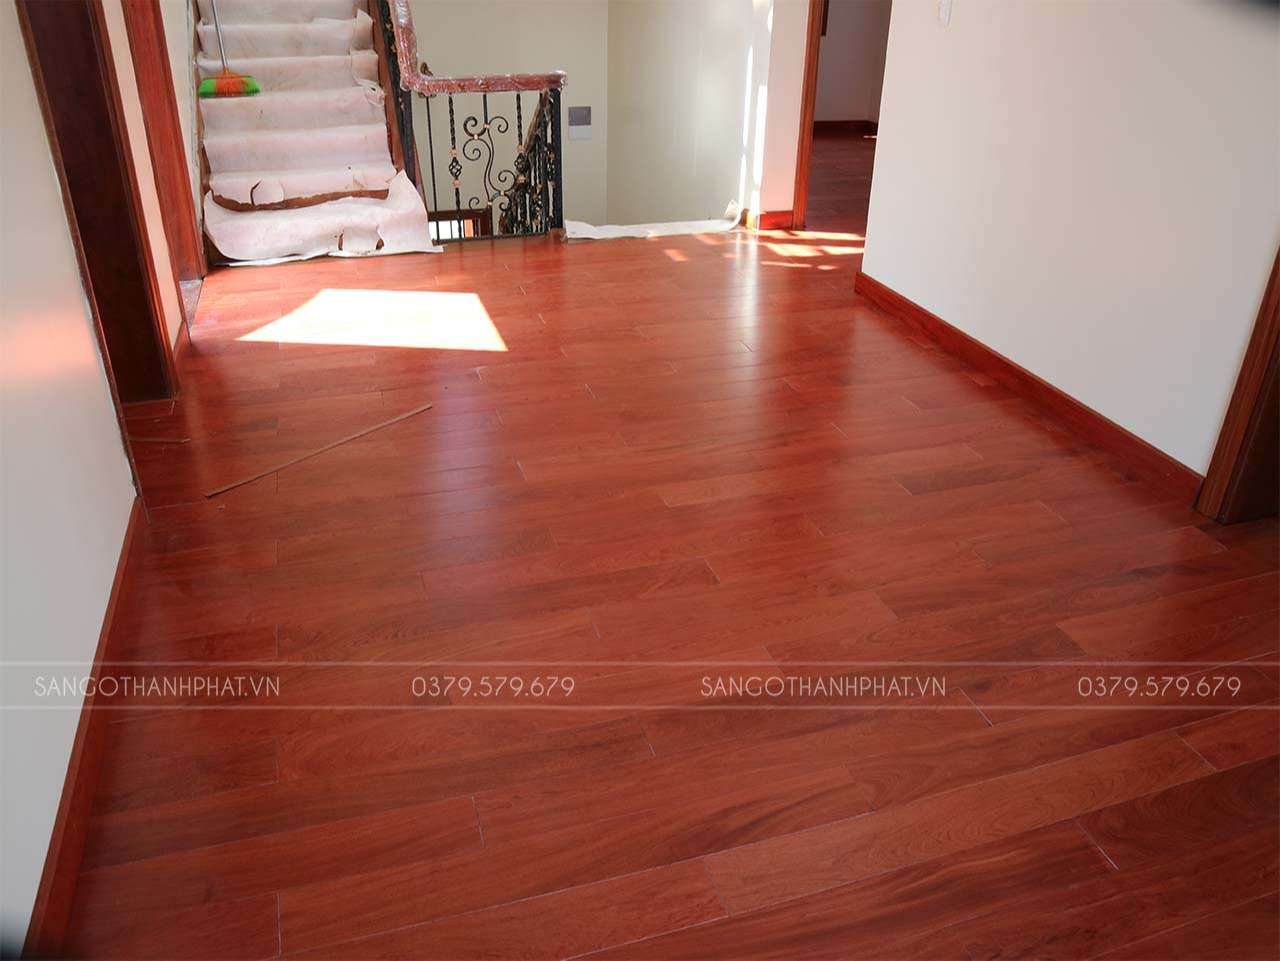 Giá sàn gỗ Hương đá Hải Phòng